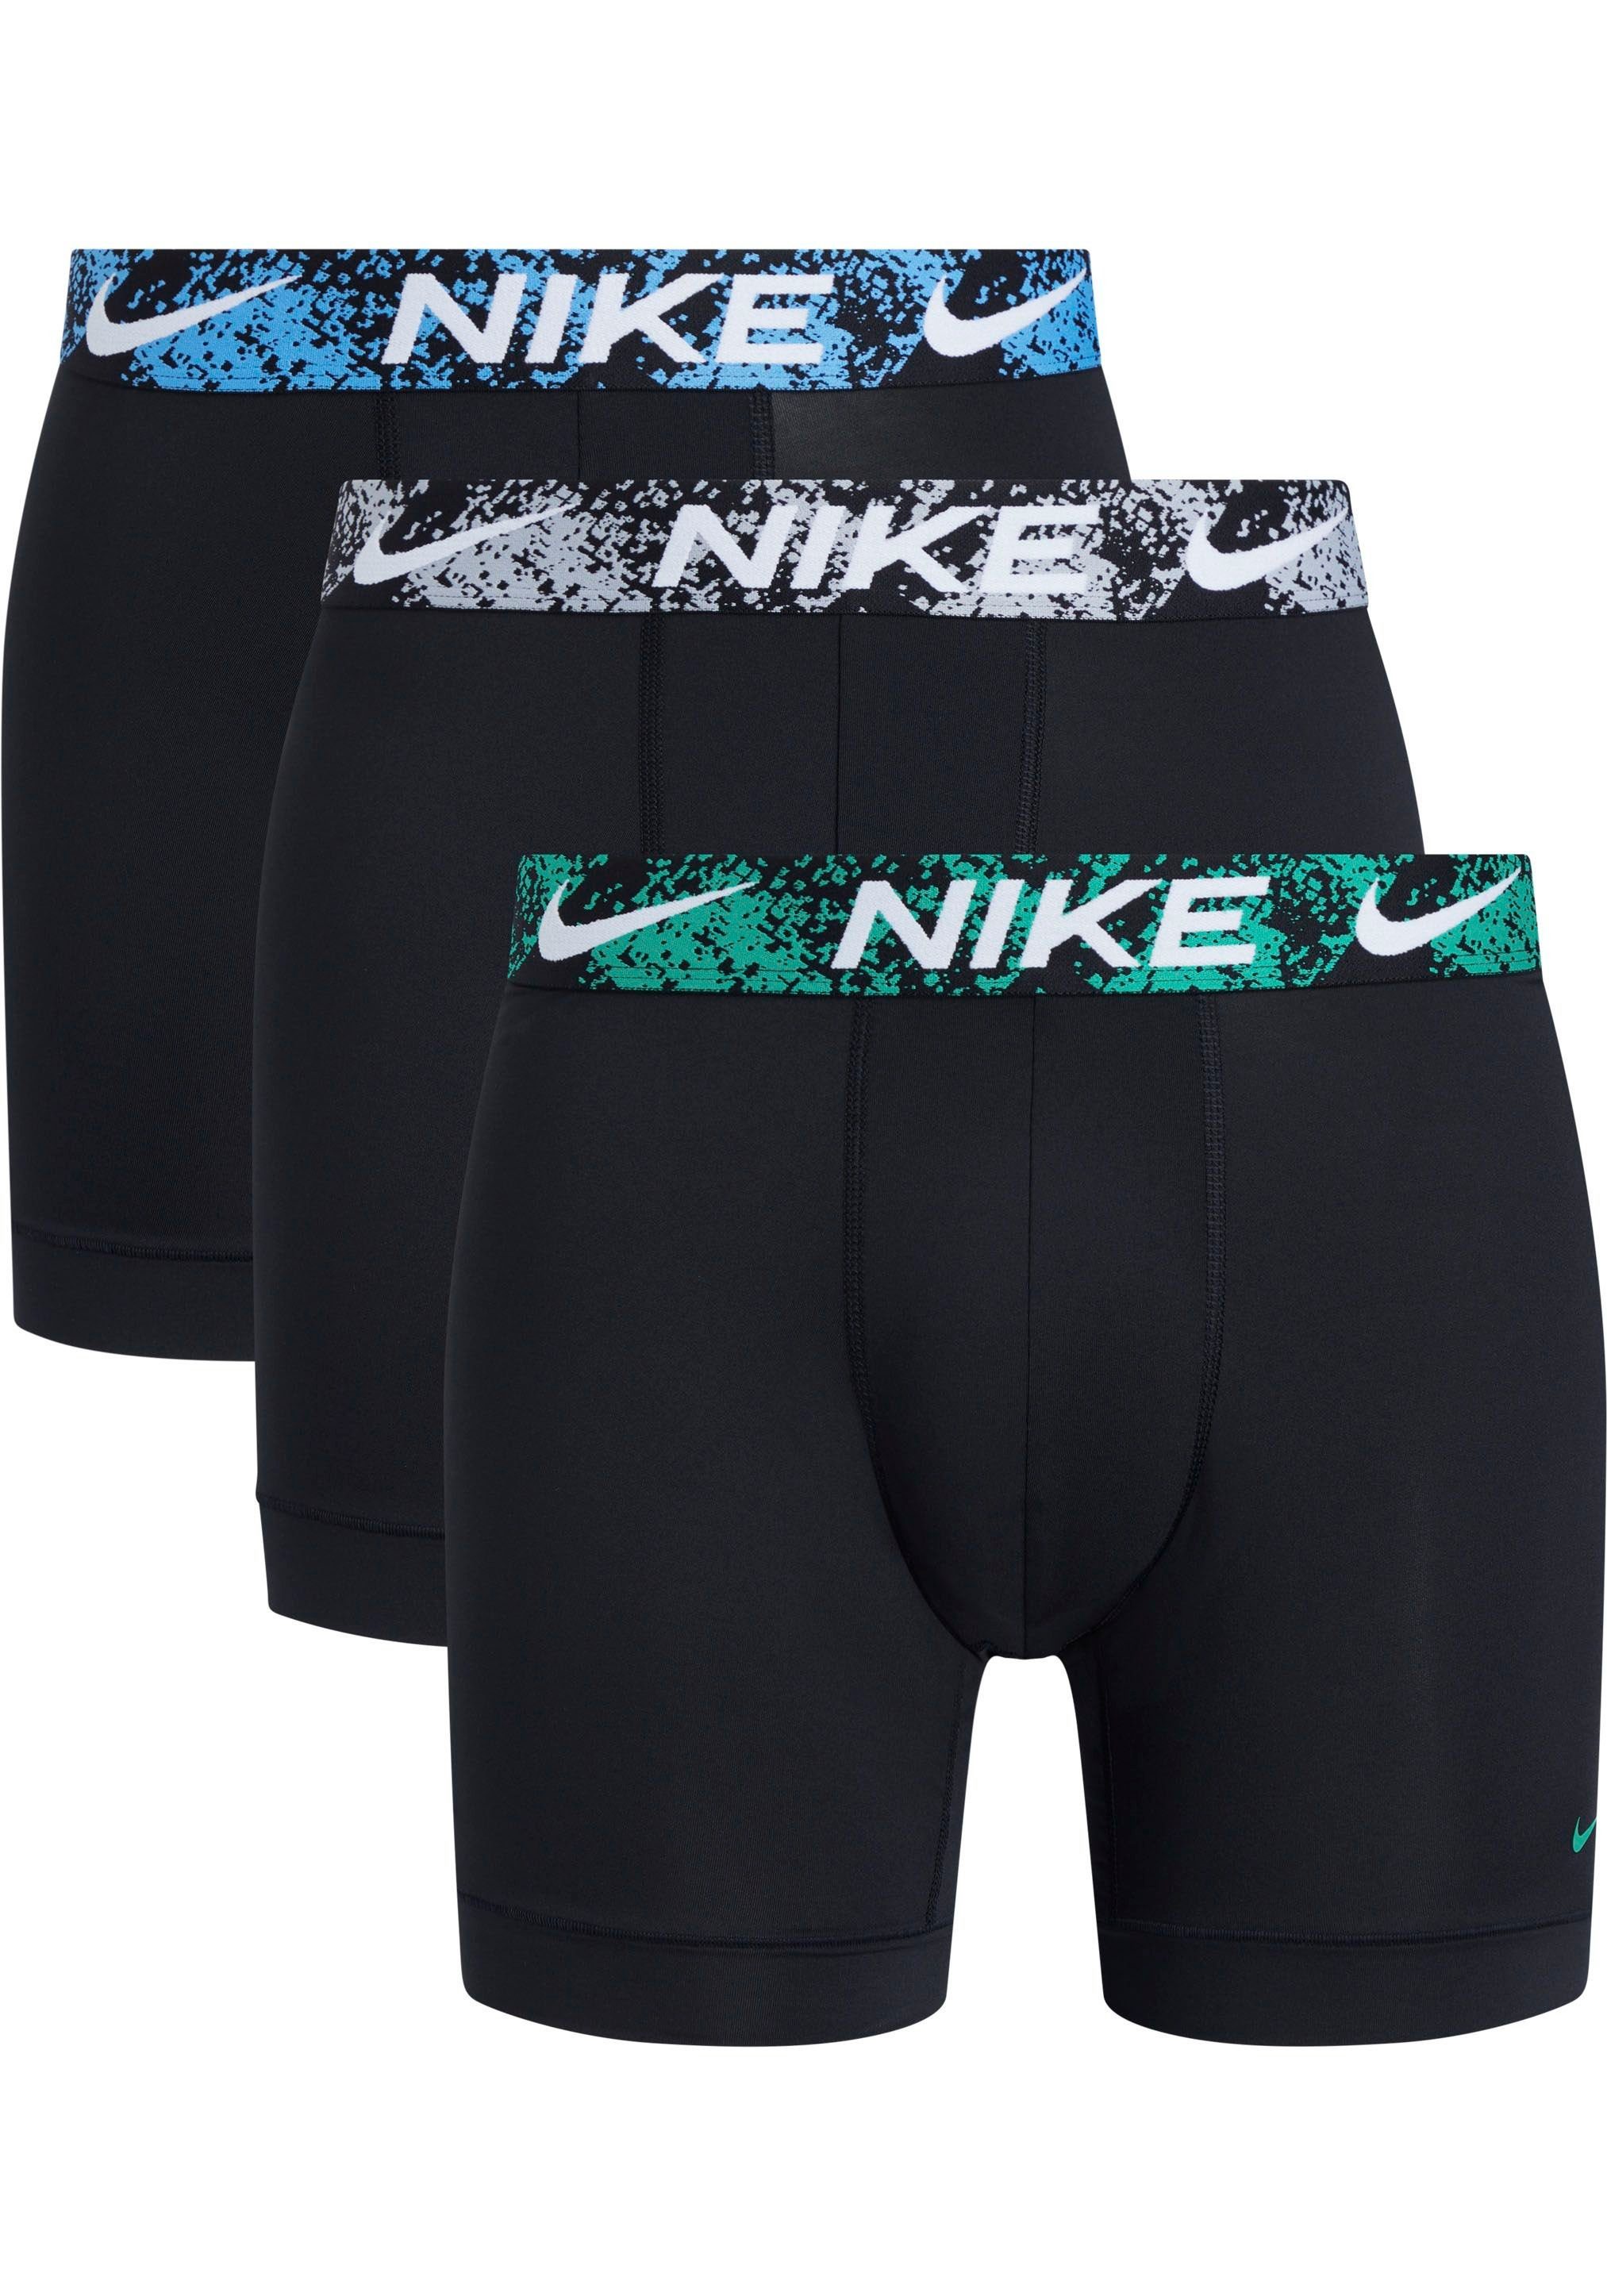 NIKE BOXER Stück) & mit längerem NIKE (3 Logo-Elastikbund Underwear (Packung, BRIEF Boxer 3PK 3er-Pack) Bein